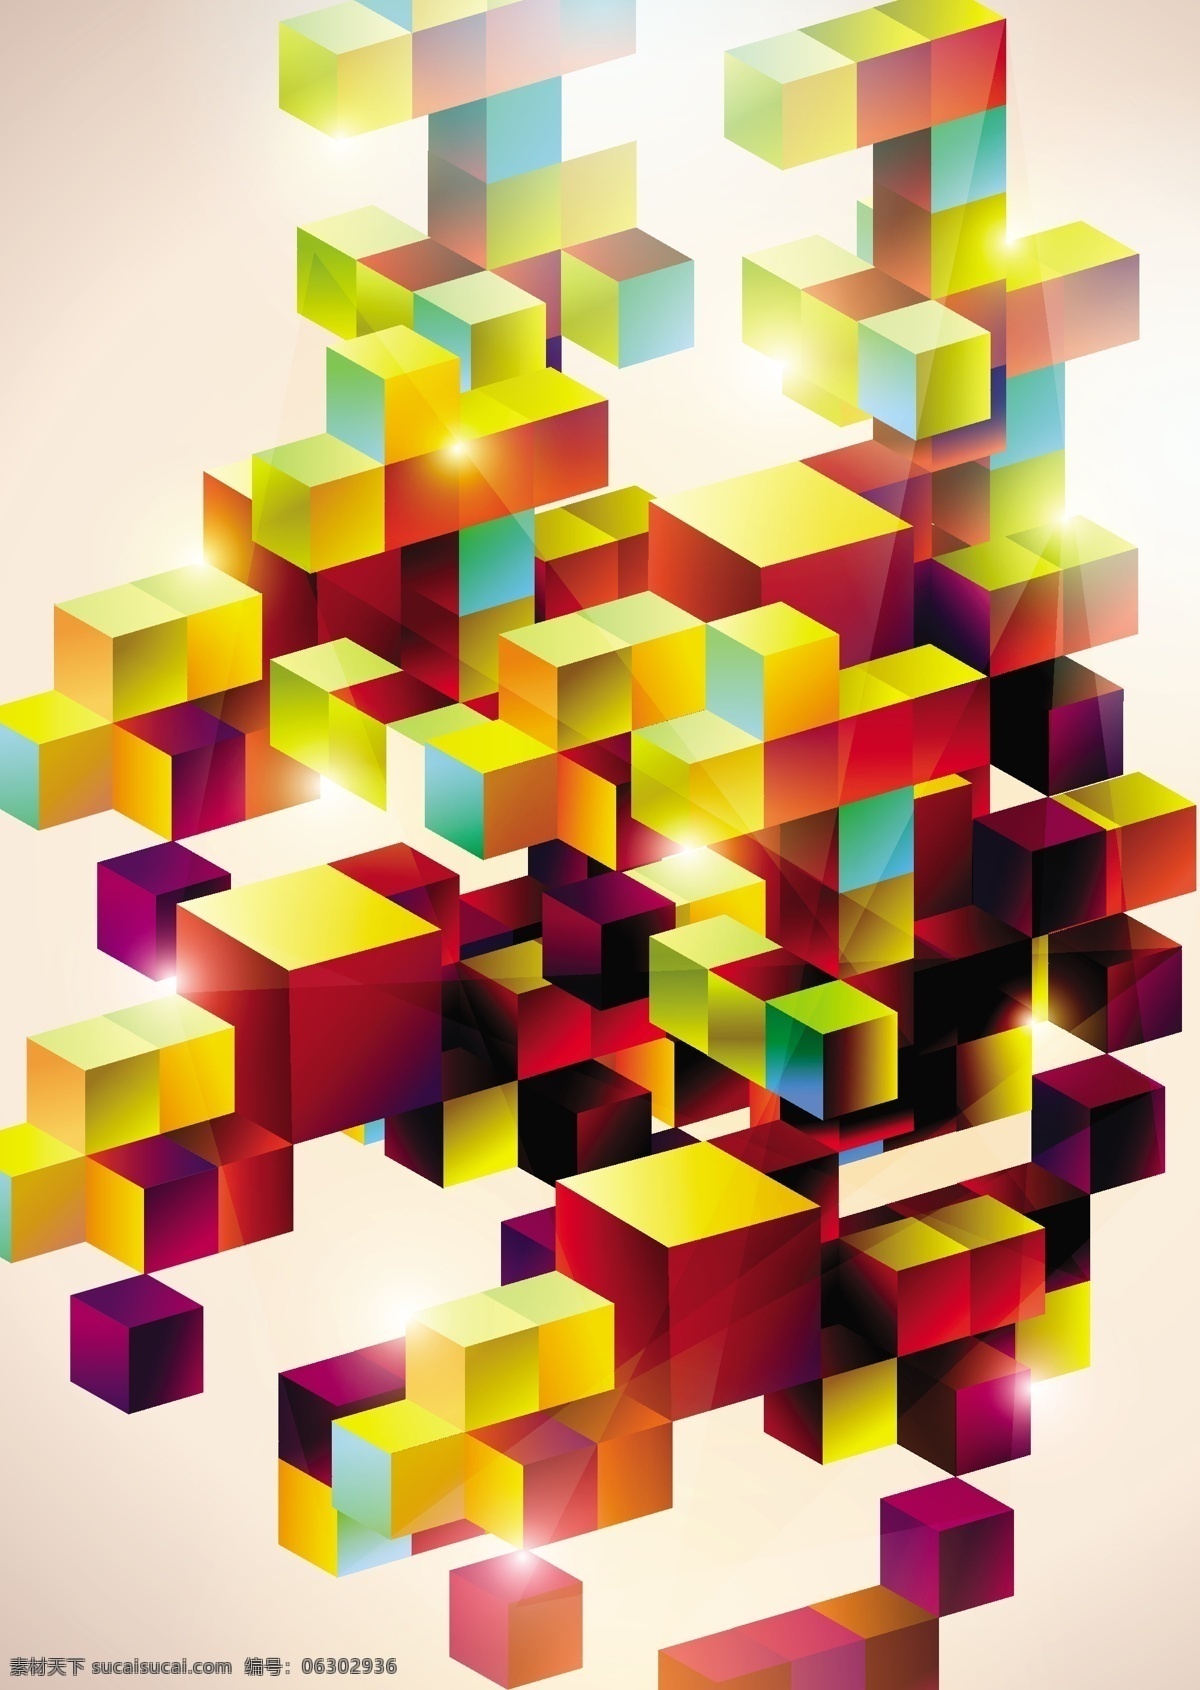 色彩 方块 矢量 立体 模板 配色 矢量素材 颜色 y大宝 矢量图 其他矢量图